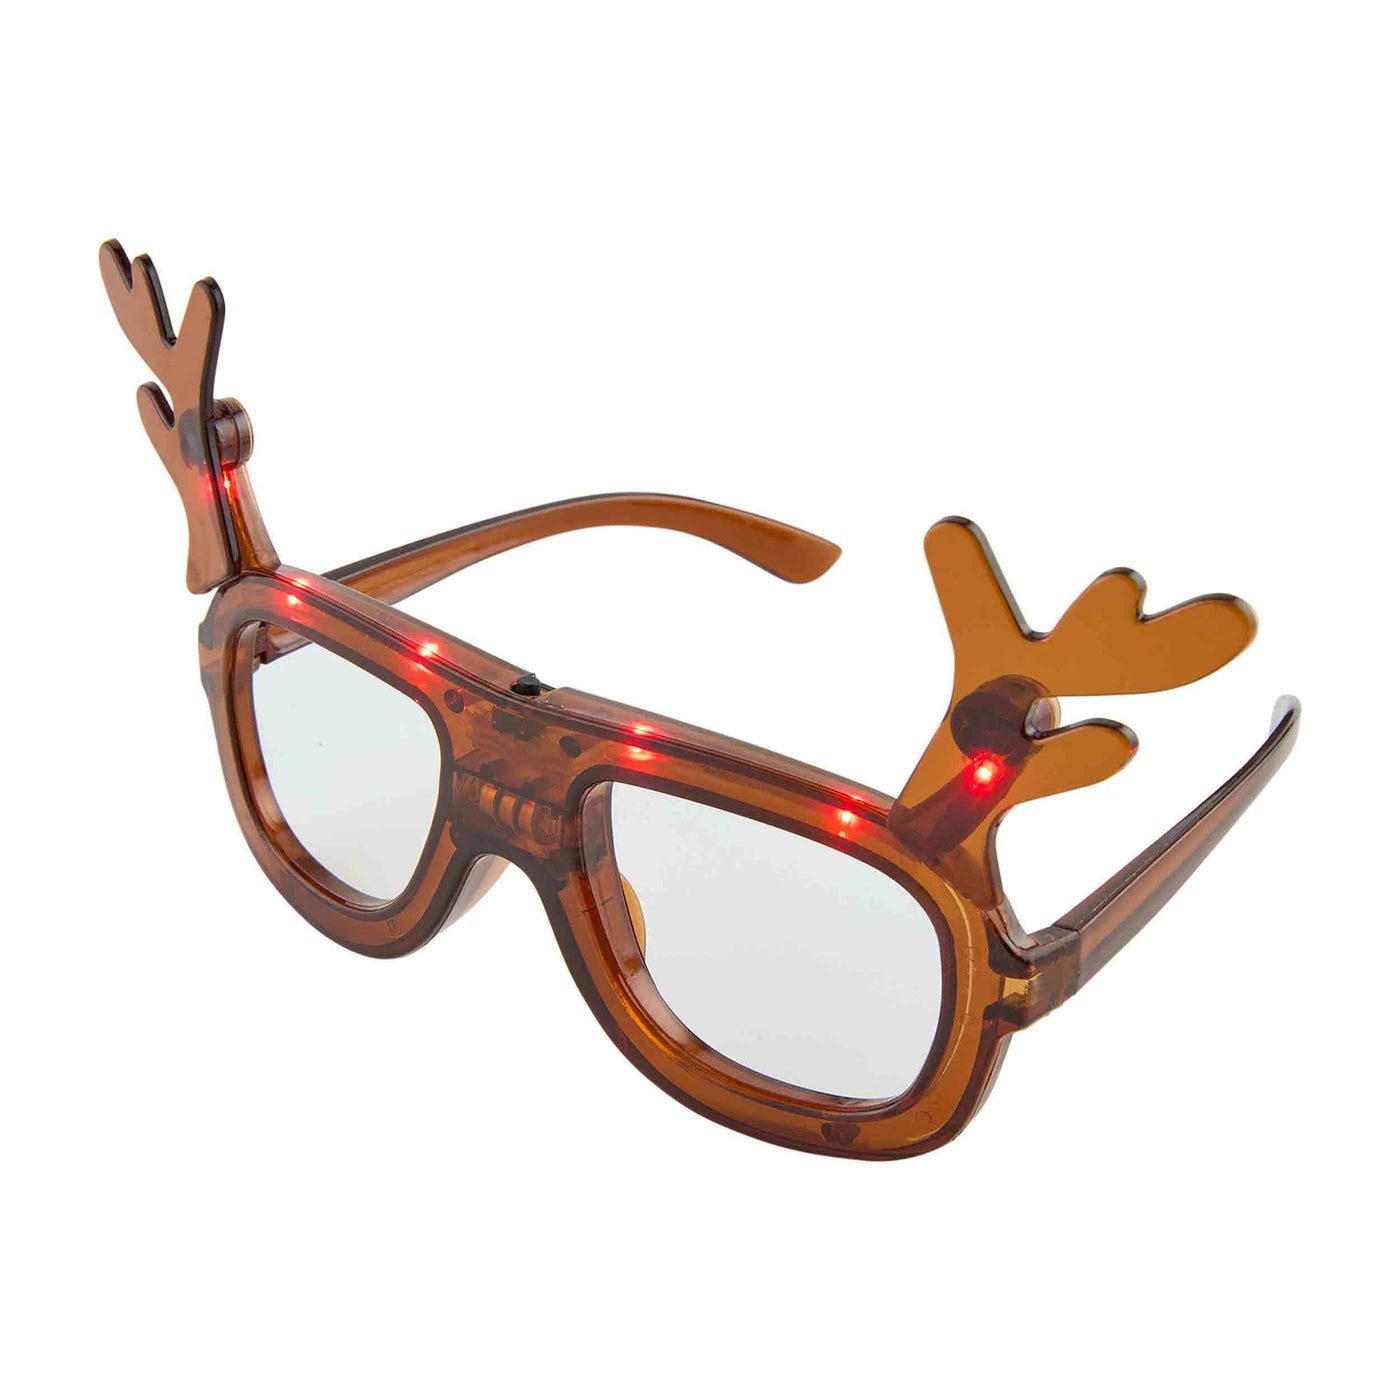 Light Up Reindeer Glasses